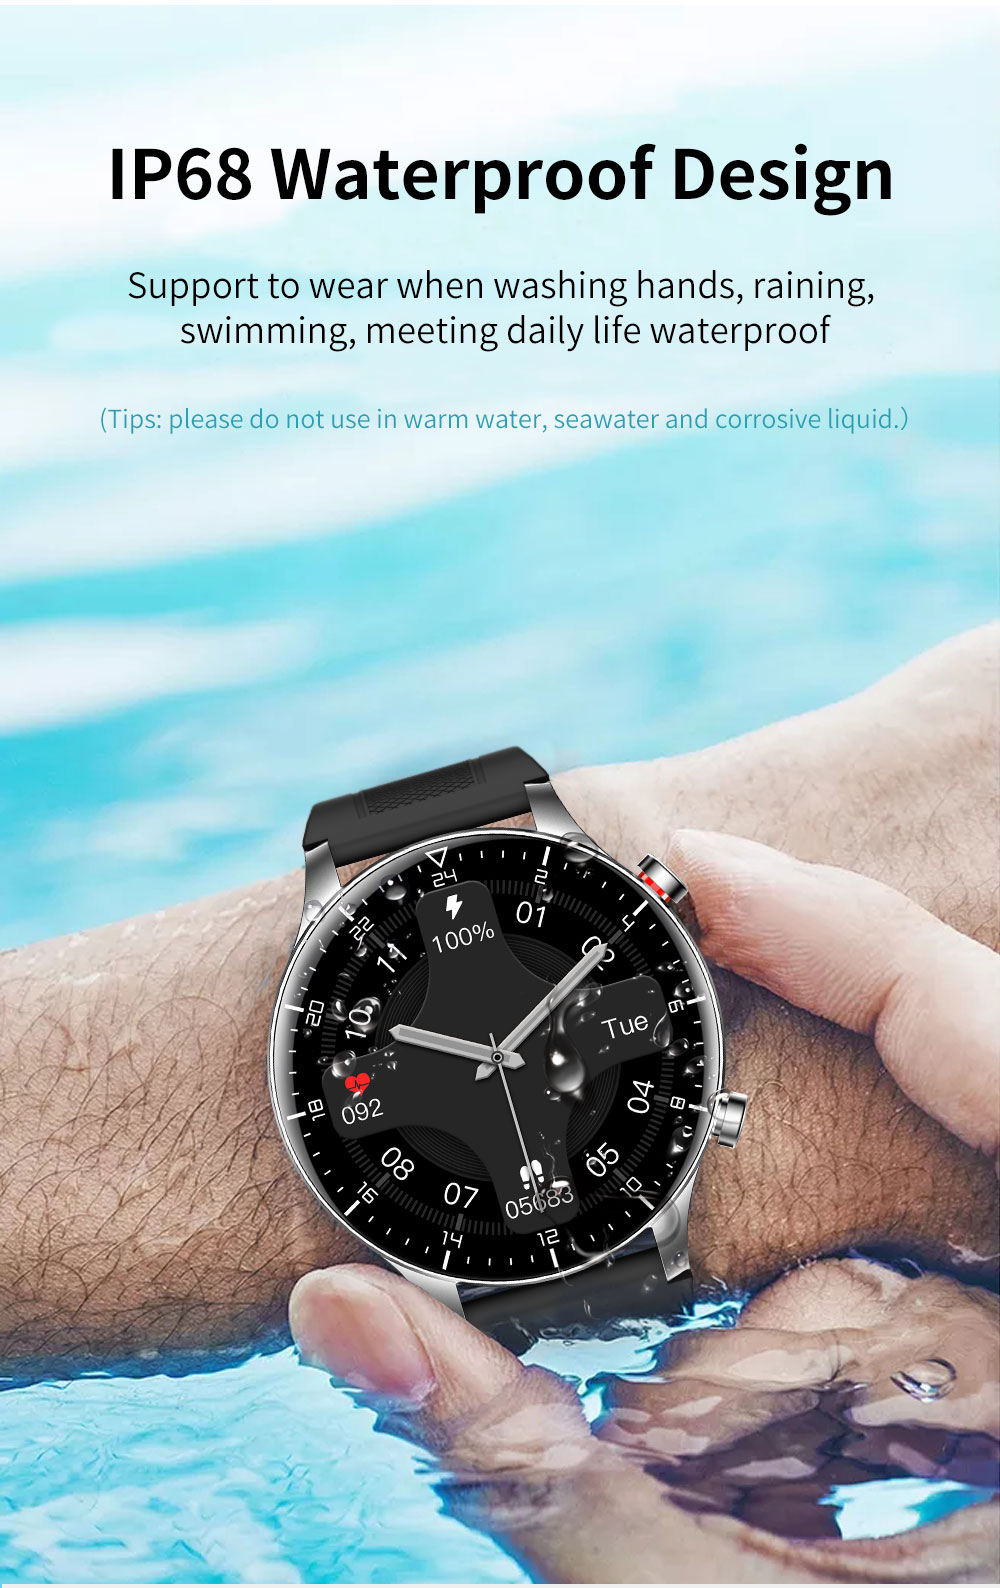 KUMI GW16T Pro Smartwatch 1.3'' Touch Screen Multiple Sports Modes Heart Health SpO2 Measurement IP68 Waterproof - Black